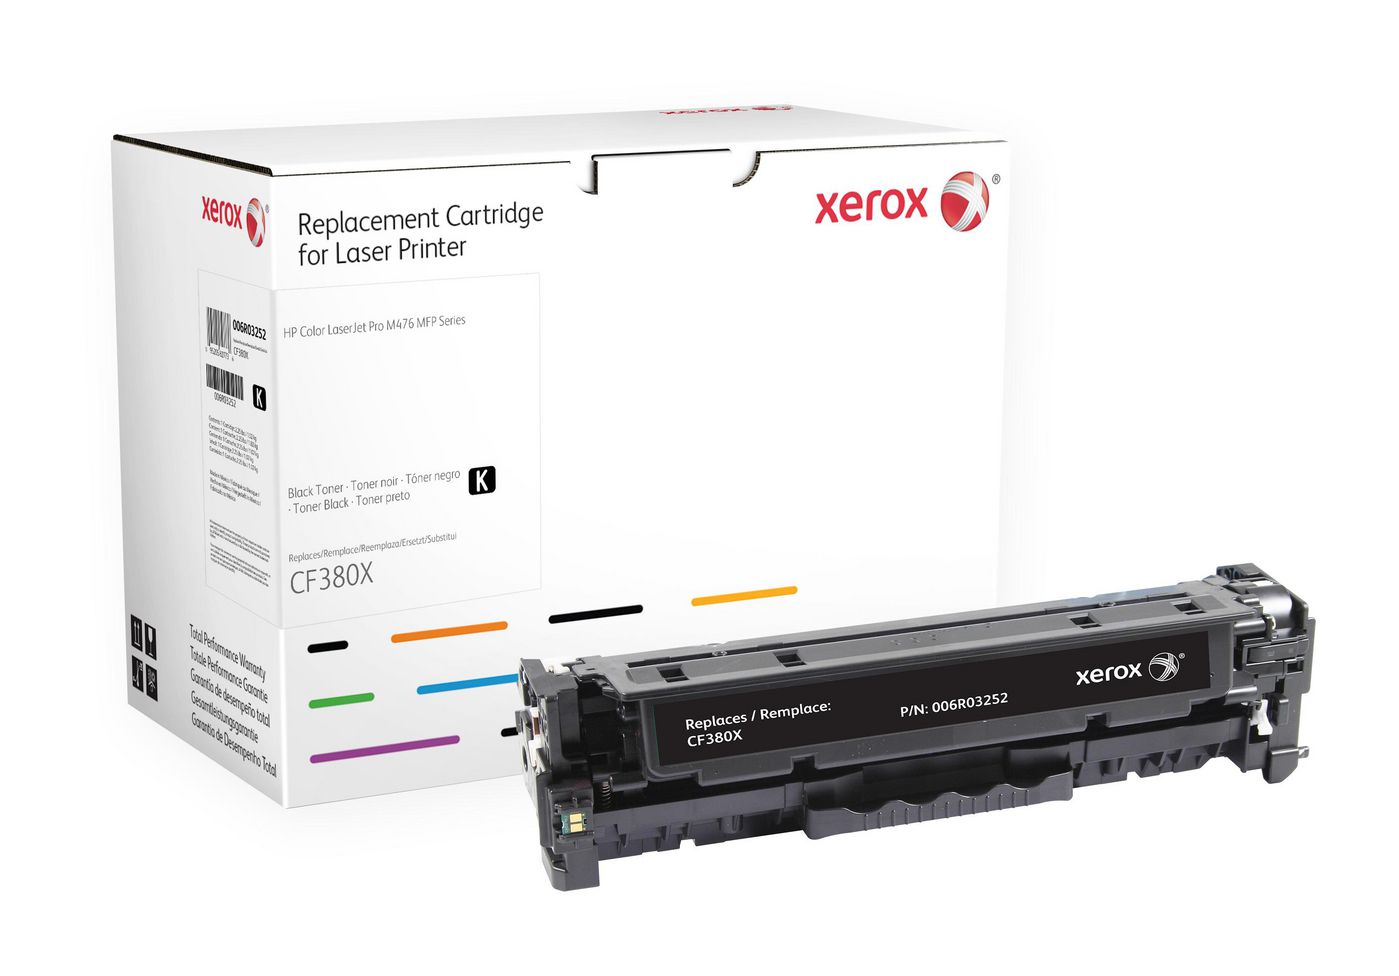 XEROX HP Colour LaserJet M476 Schwarz Tonerpatrone